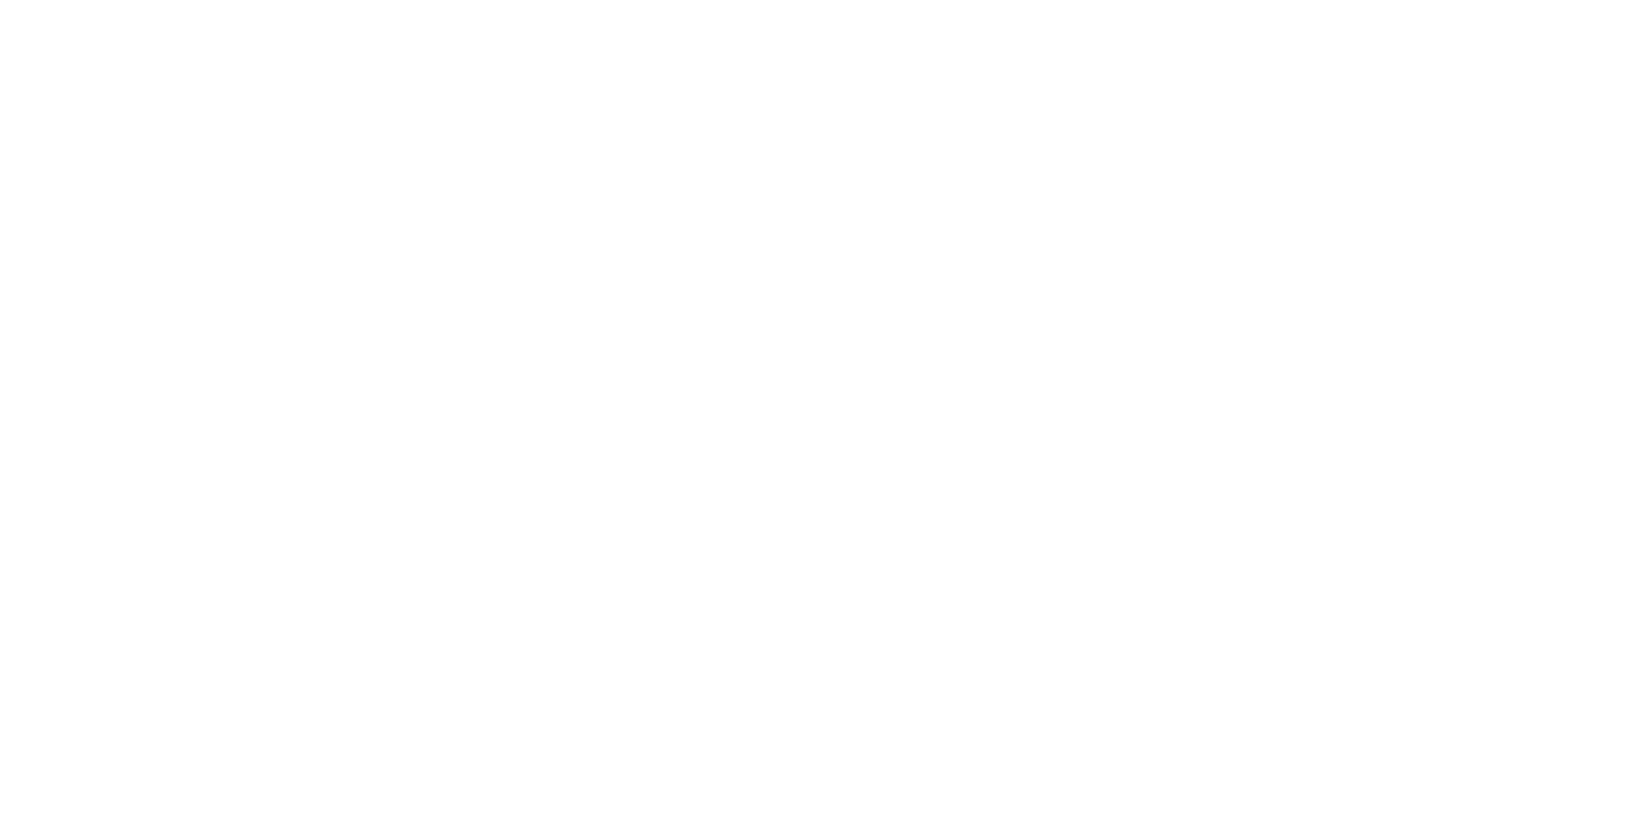 Centerra Gold logo large for dark backgrounds (transparent PNG)